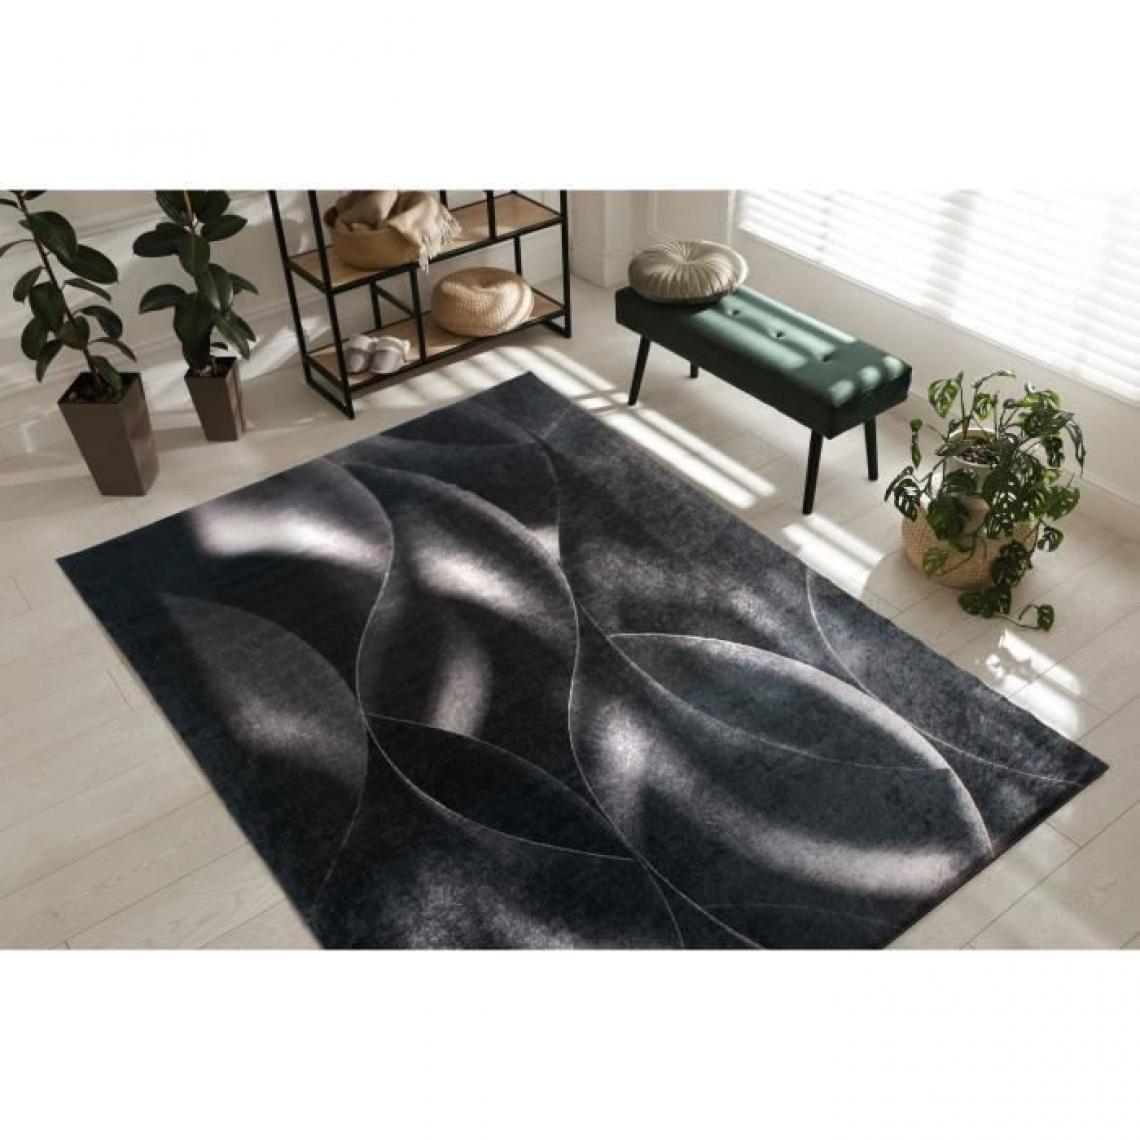 NAZAR - Tapis de salon moderne - Motif vagues - Noir - 100% polyester - 120 x 160 cm - Intérieur - NAZAR - Tapis